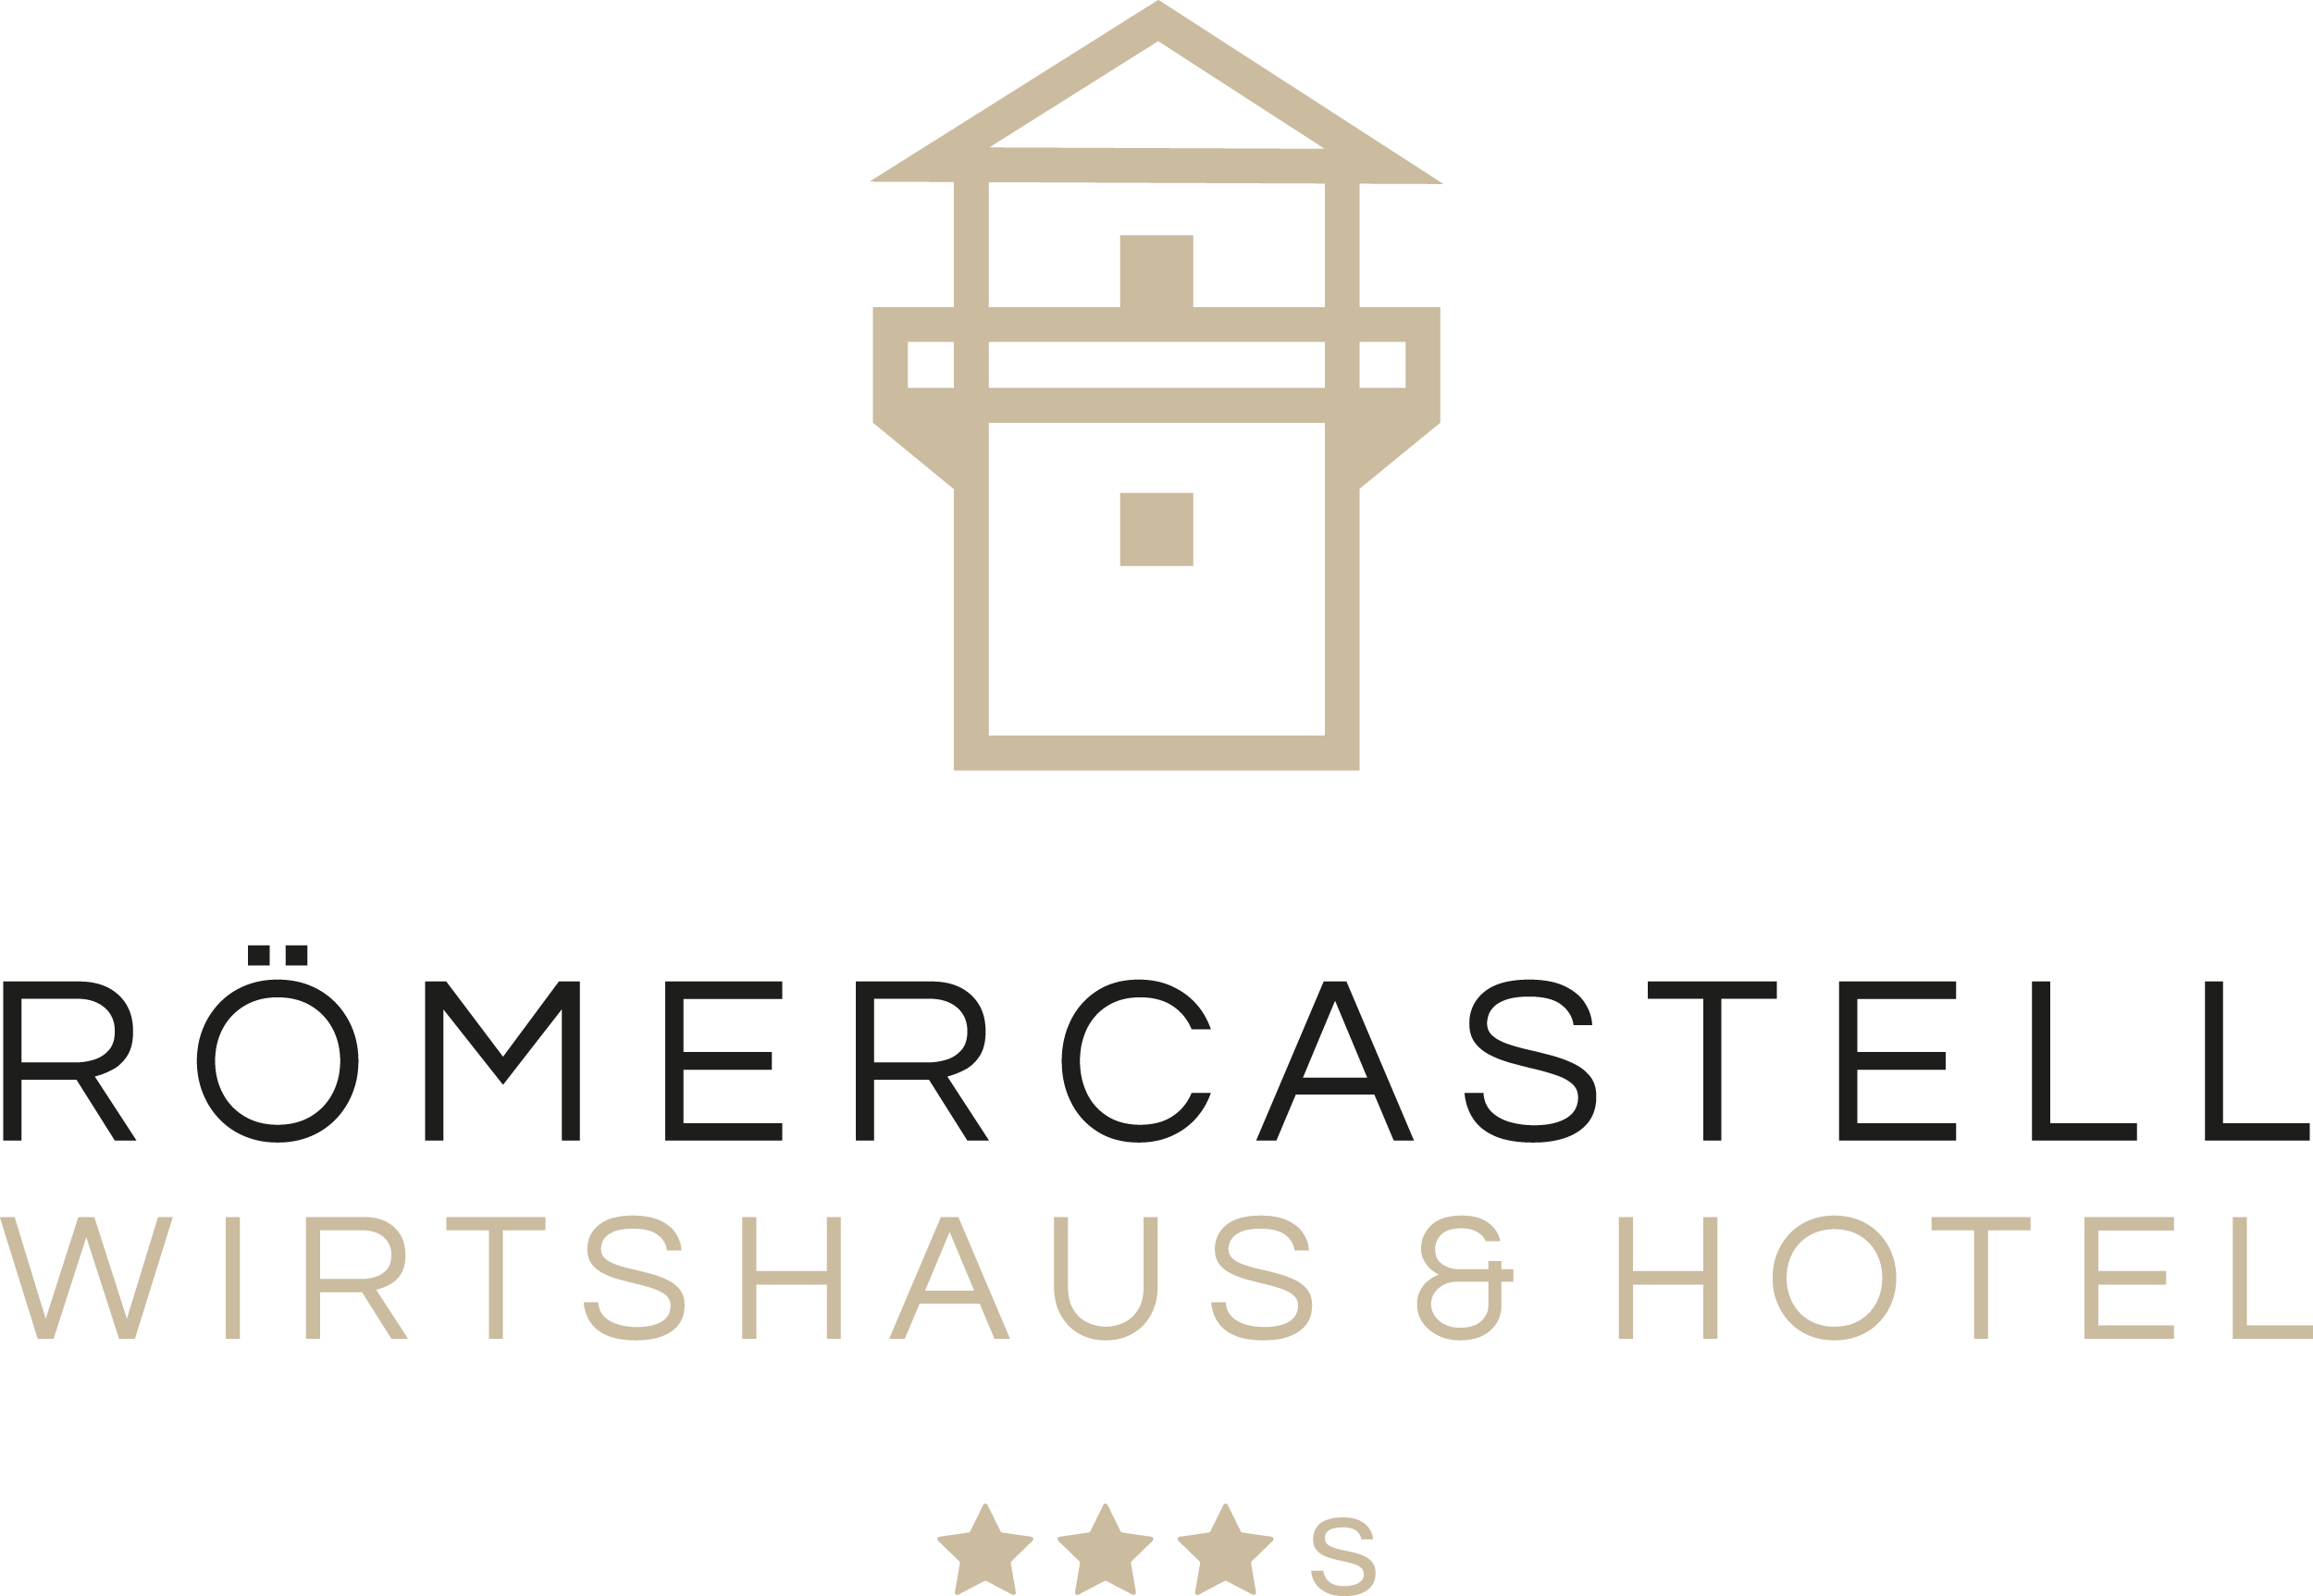 Römercastell Wirtshaus & Hotel Logo